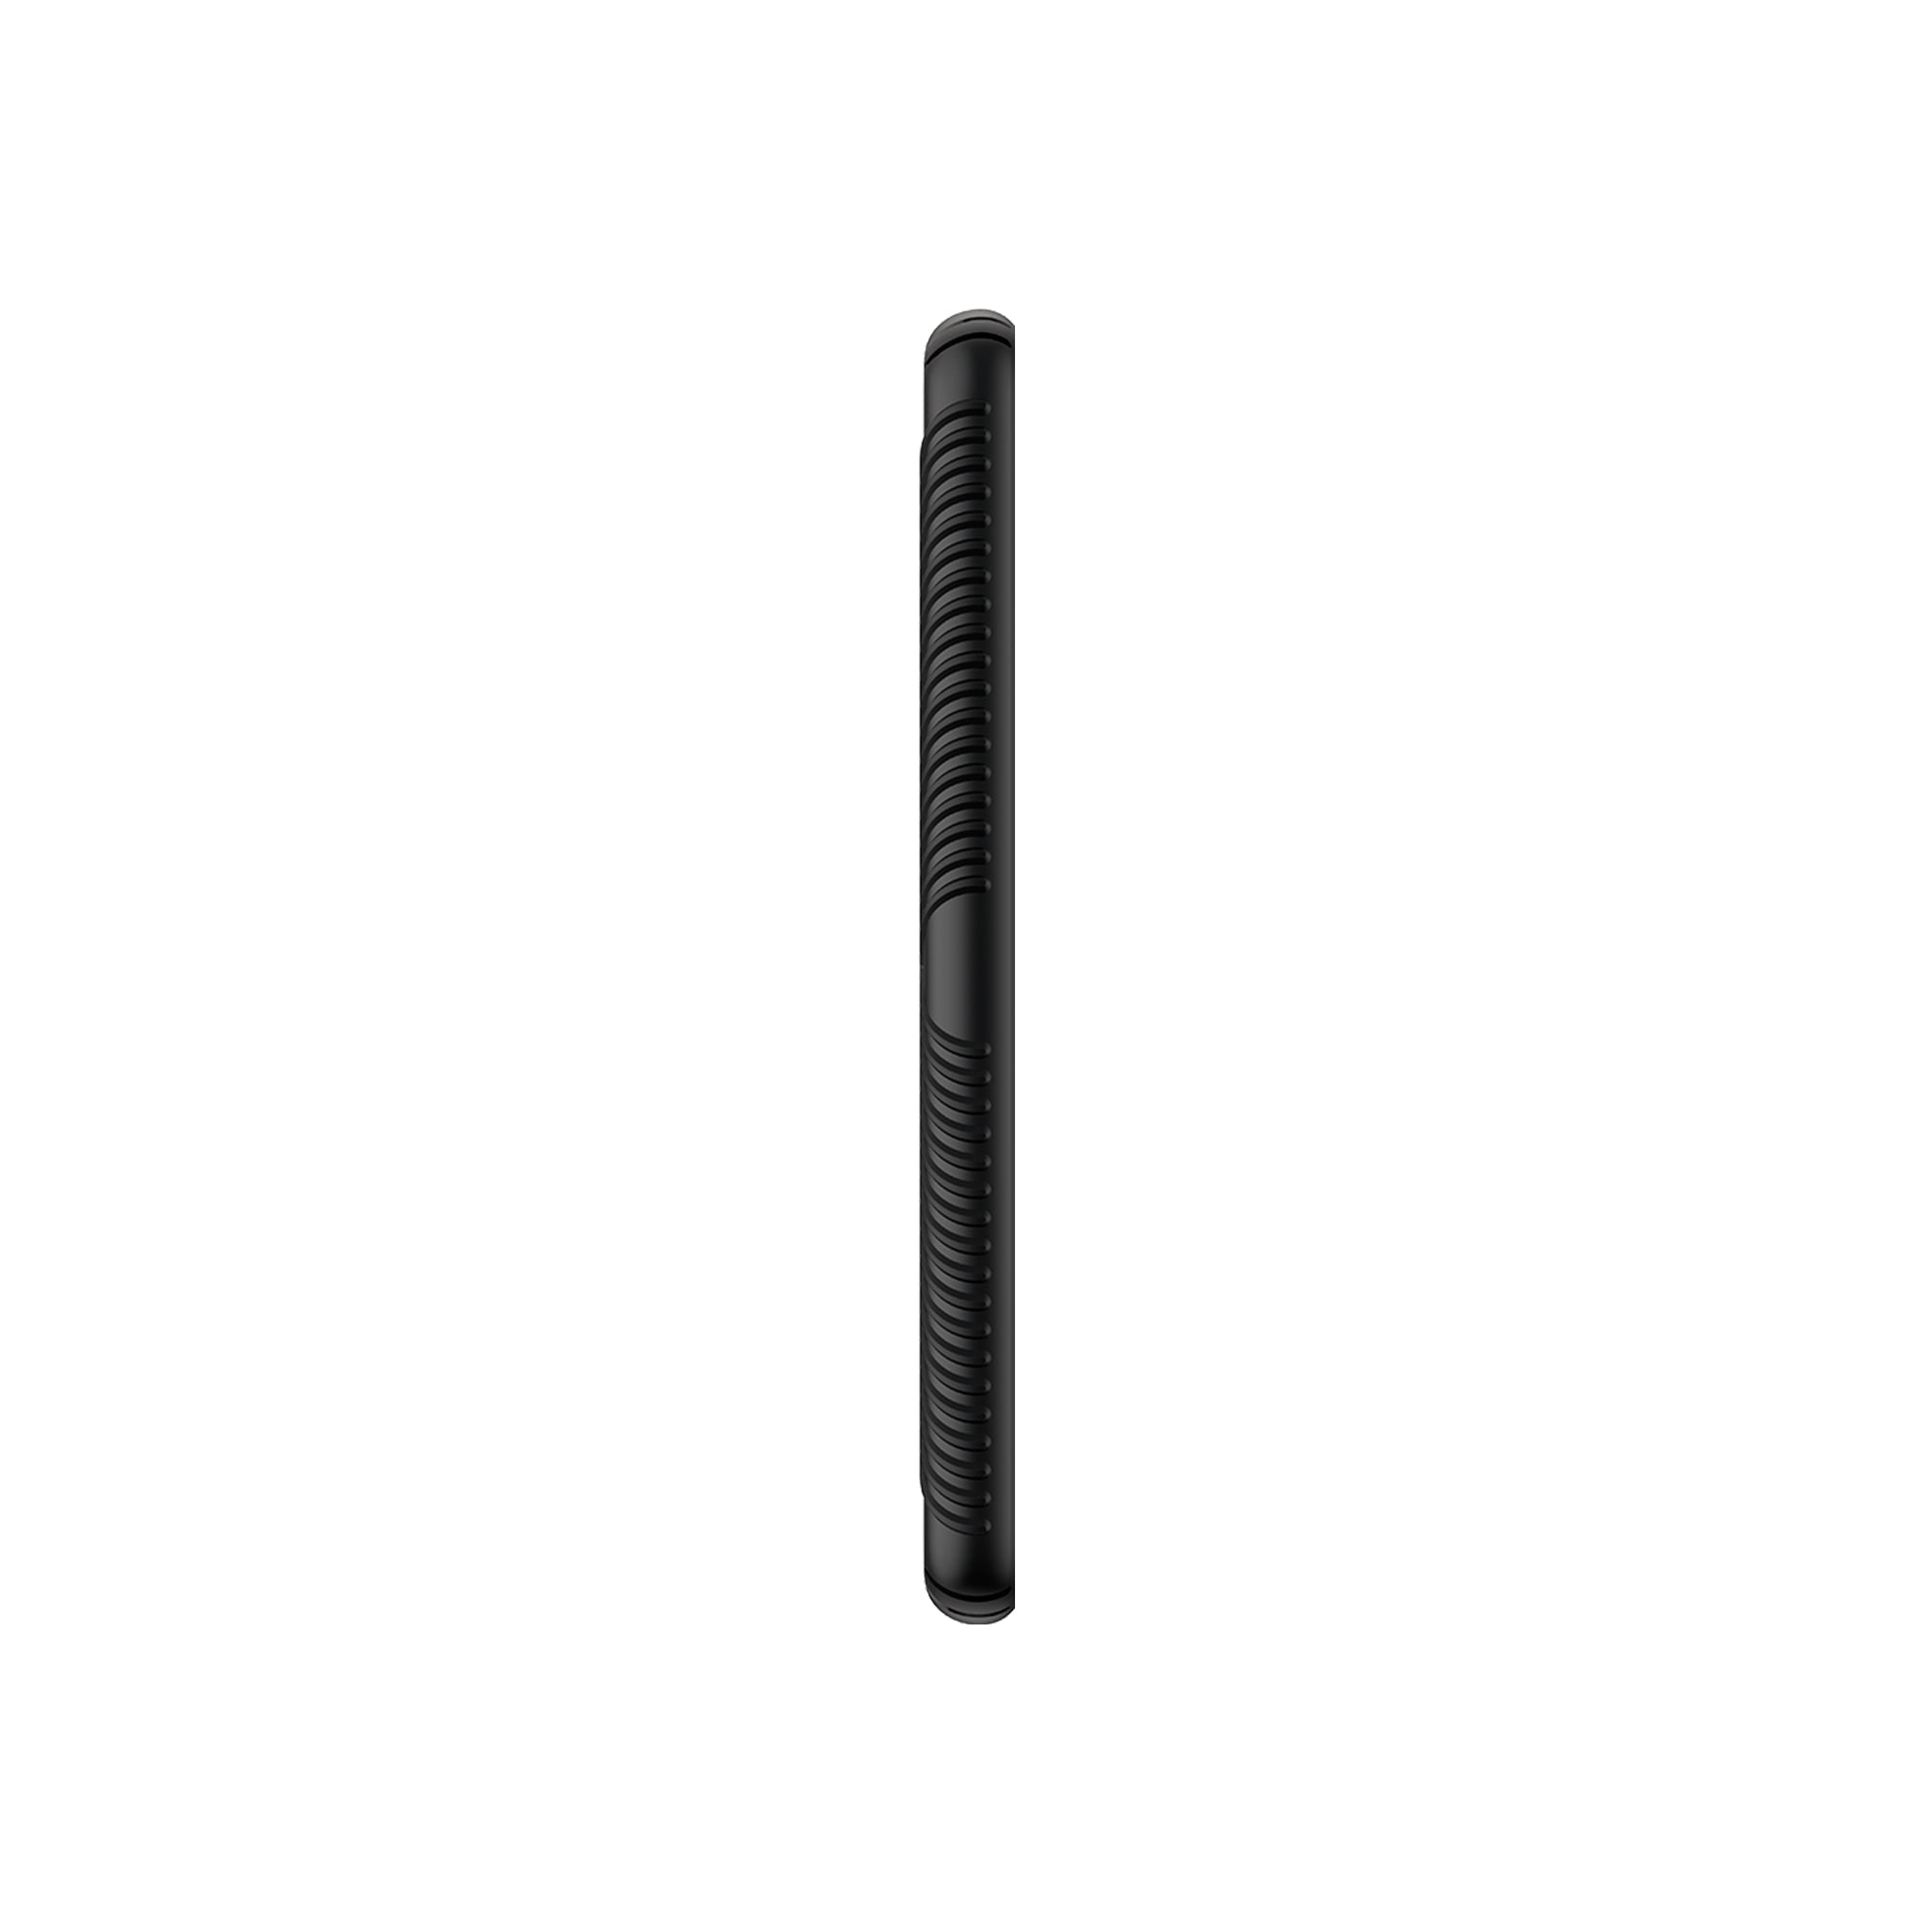 Speck - Presidio Grip Case For Motorola Moto Z4 - Black